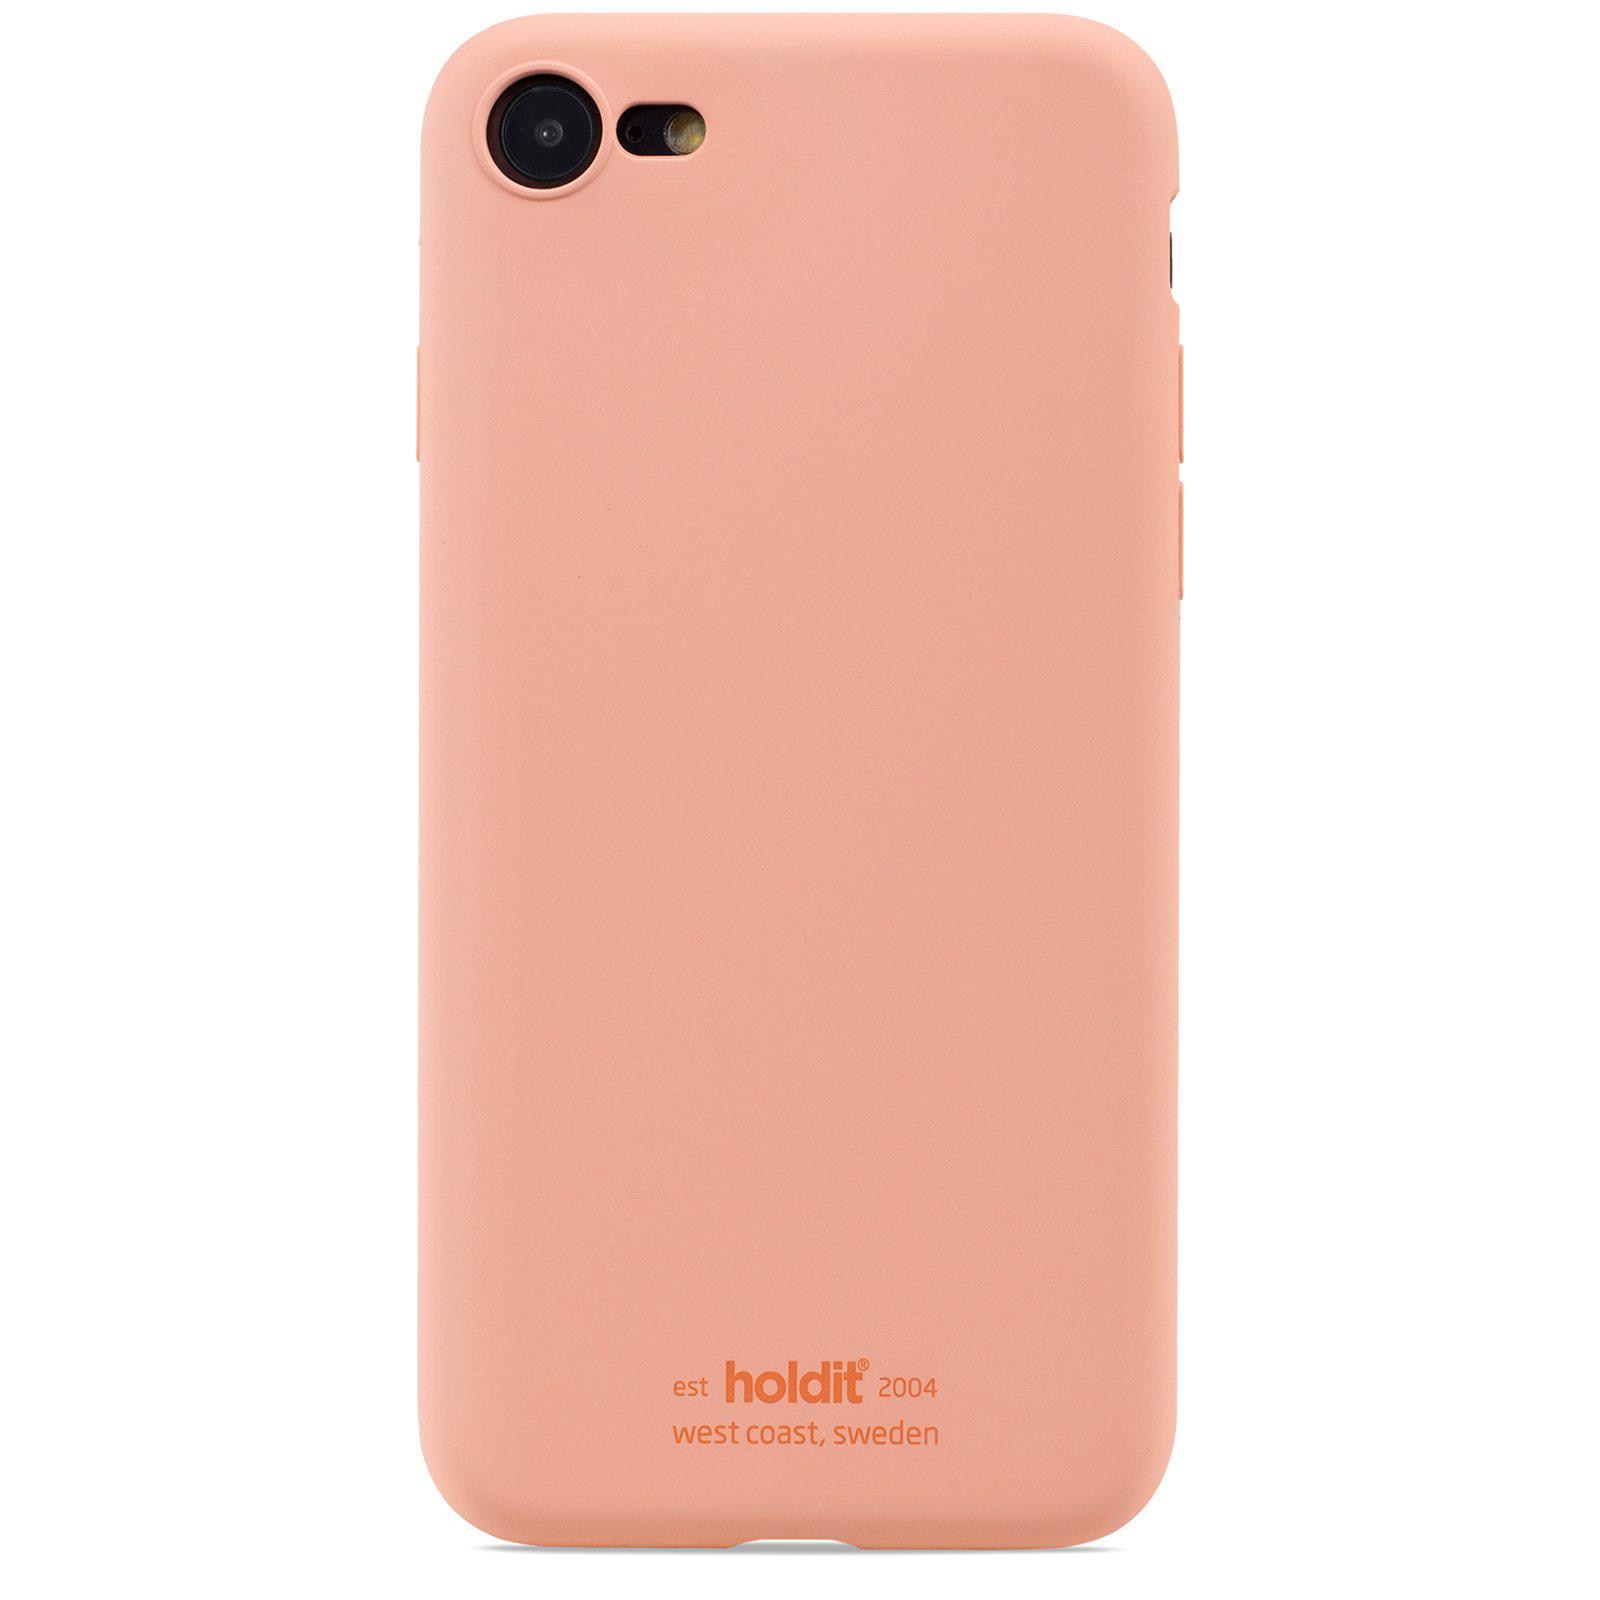 Silikonhülle iPhone 8 Pink Peach